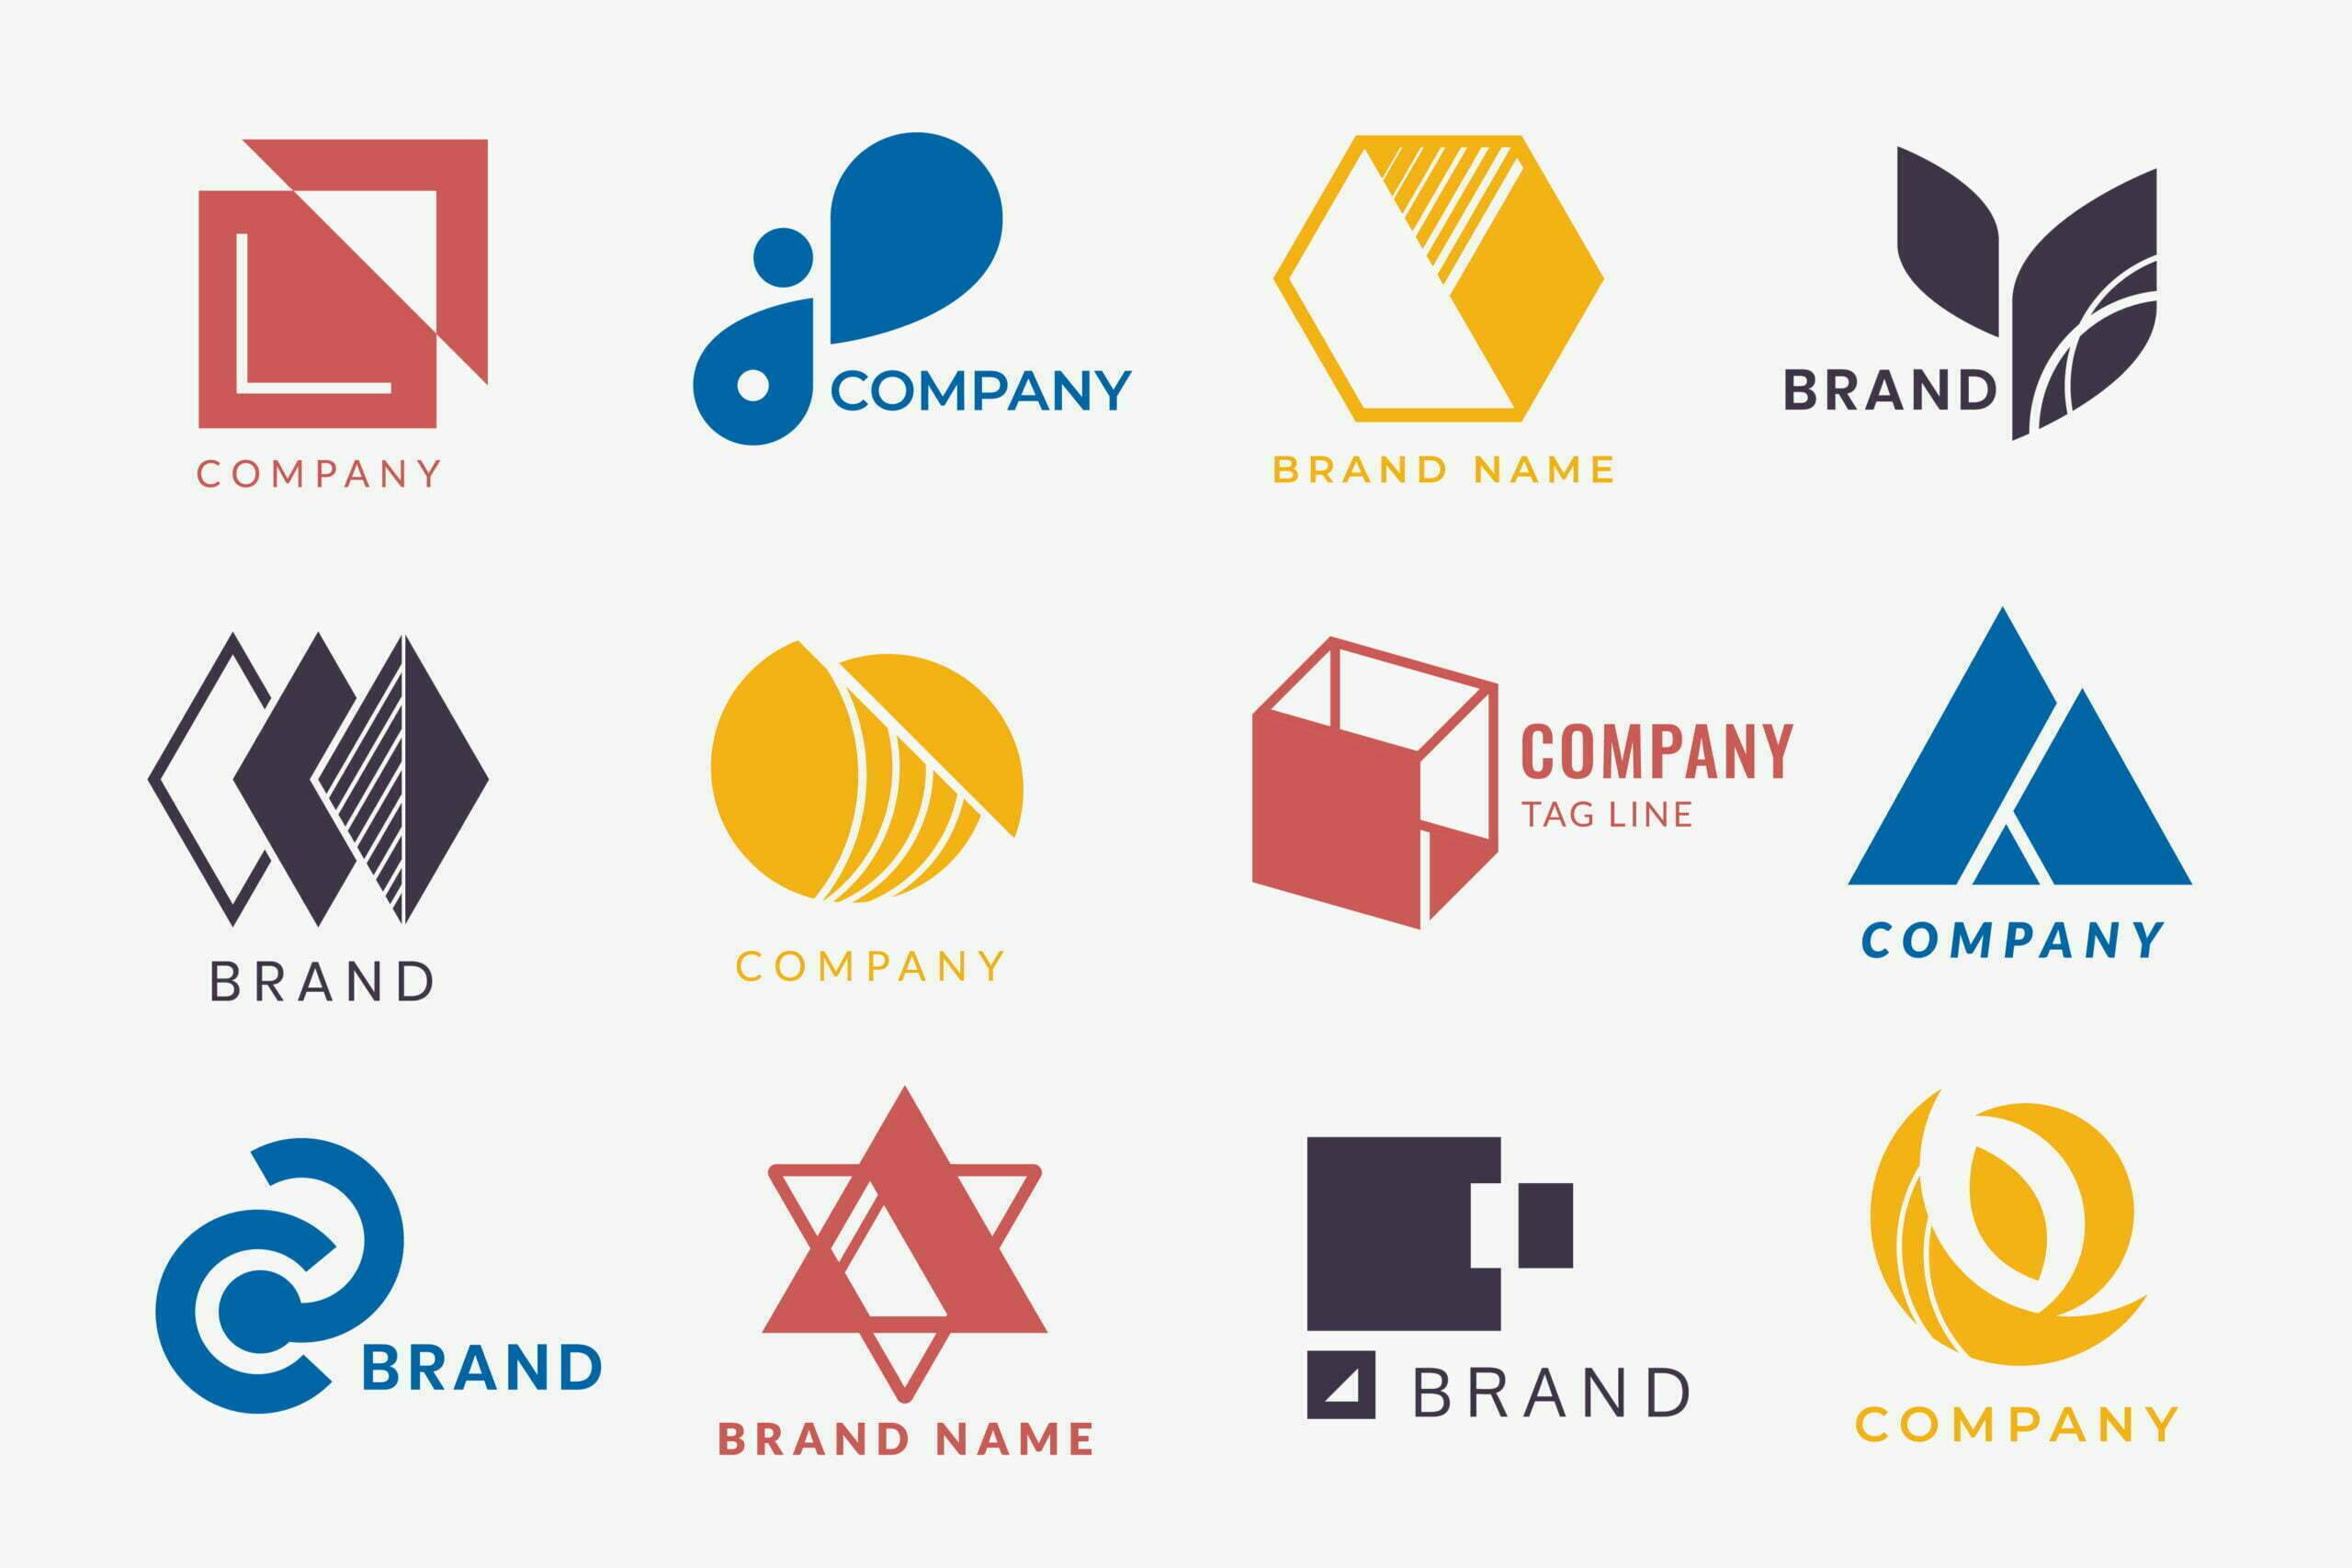 Logos - Company branding logo designs vector collection